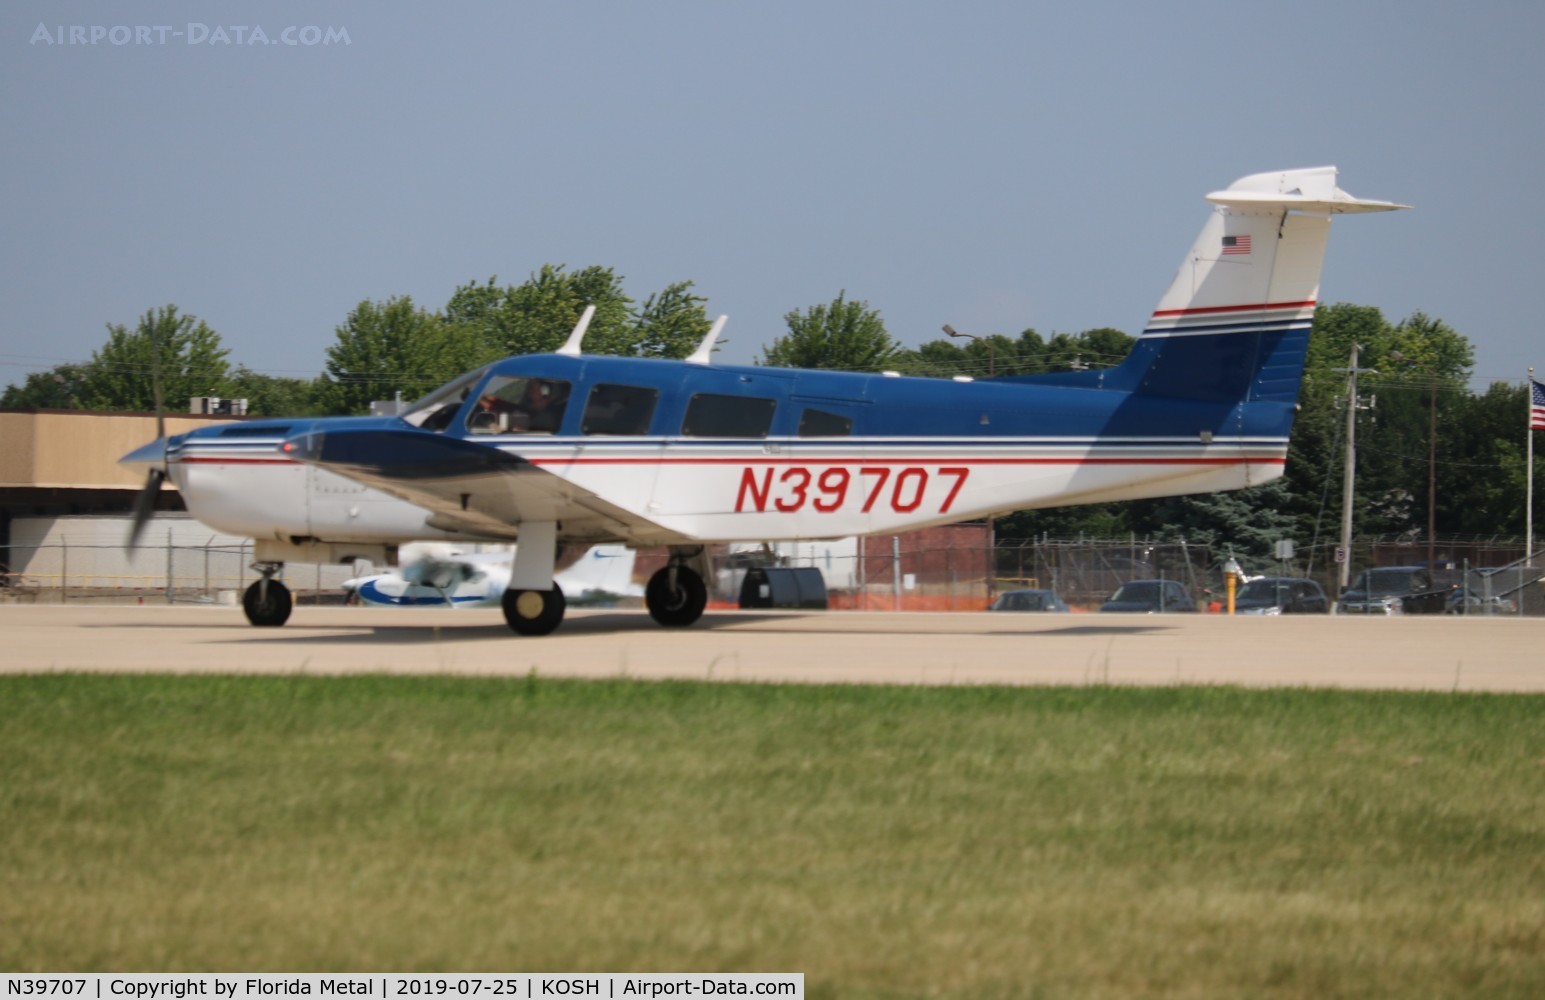 N39707, 1978 Piper PA-32RT-300T Turbo Lance II C/N 32R-7887118, PA-32RT-300T